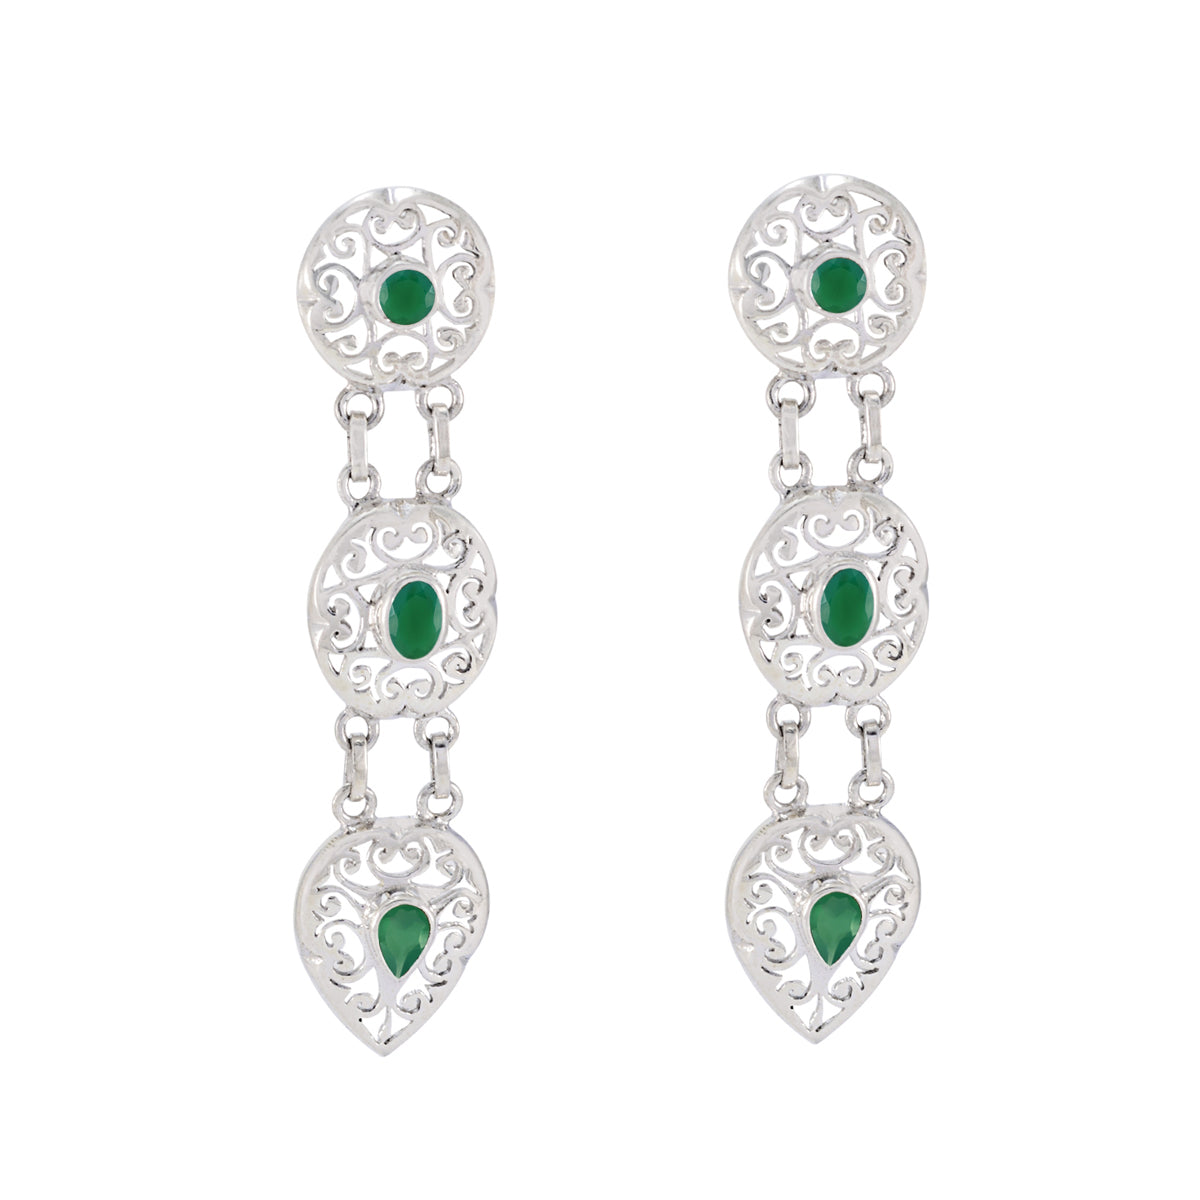 Riyo Exquisiter 925er Sterlingsilber-Ohrring für Damen, grüner Onyx-Ohrring, Lünettenfassung, grüner Ohrring-Bolzenohrring